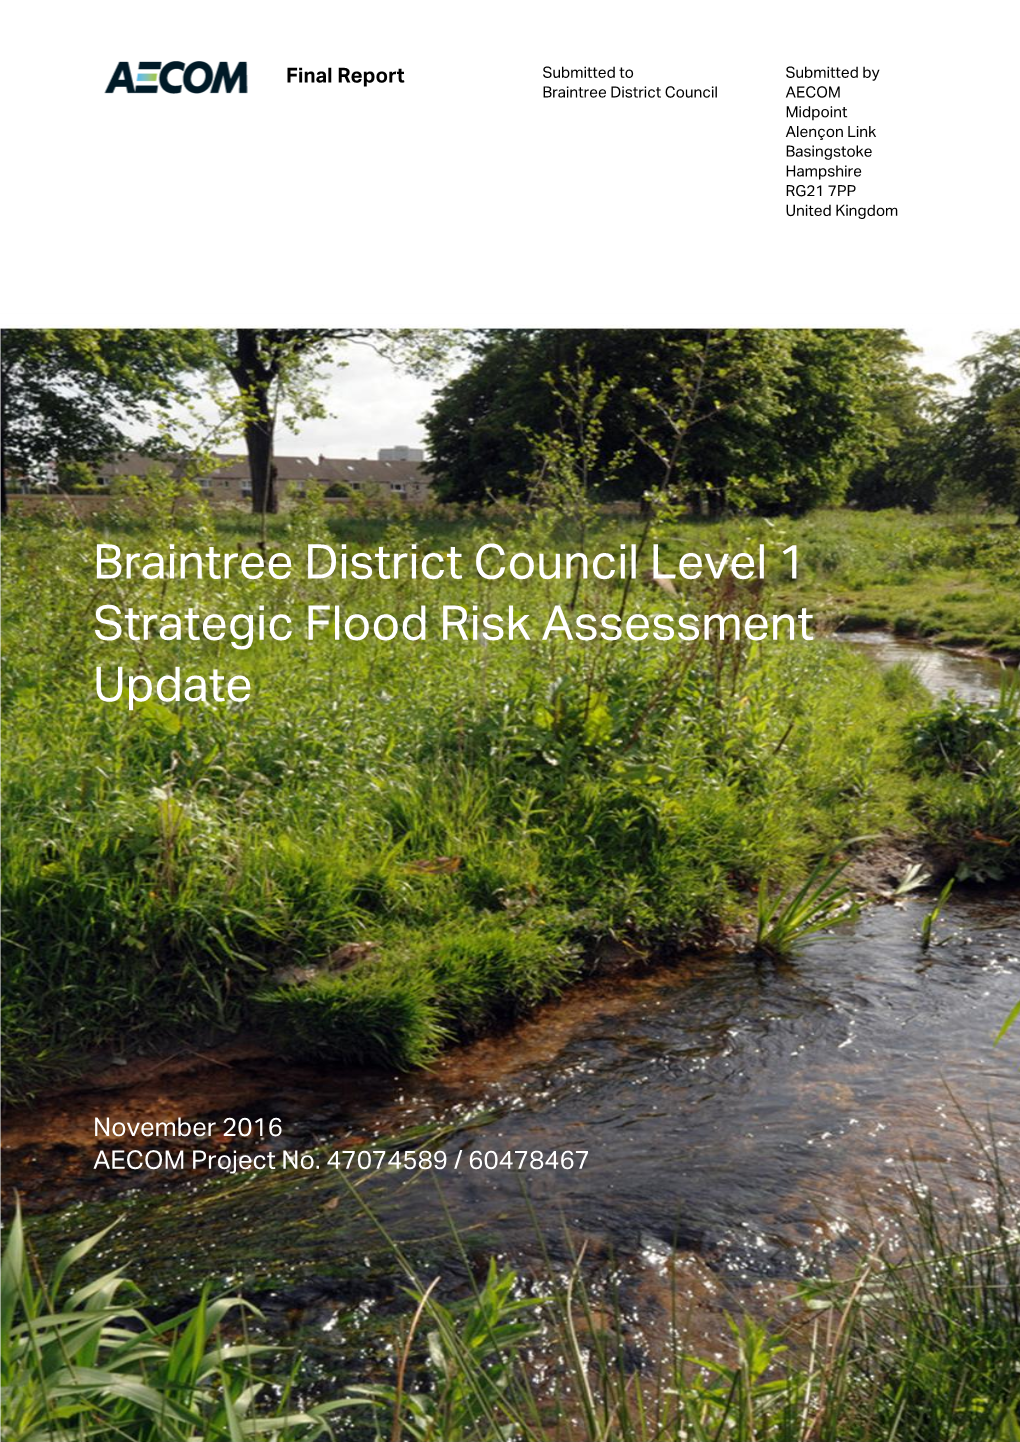 Level 1 Strategic Flood Risk Assessment Update